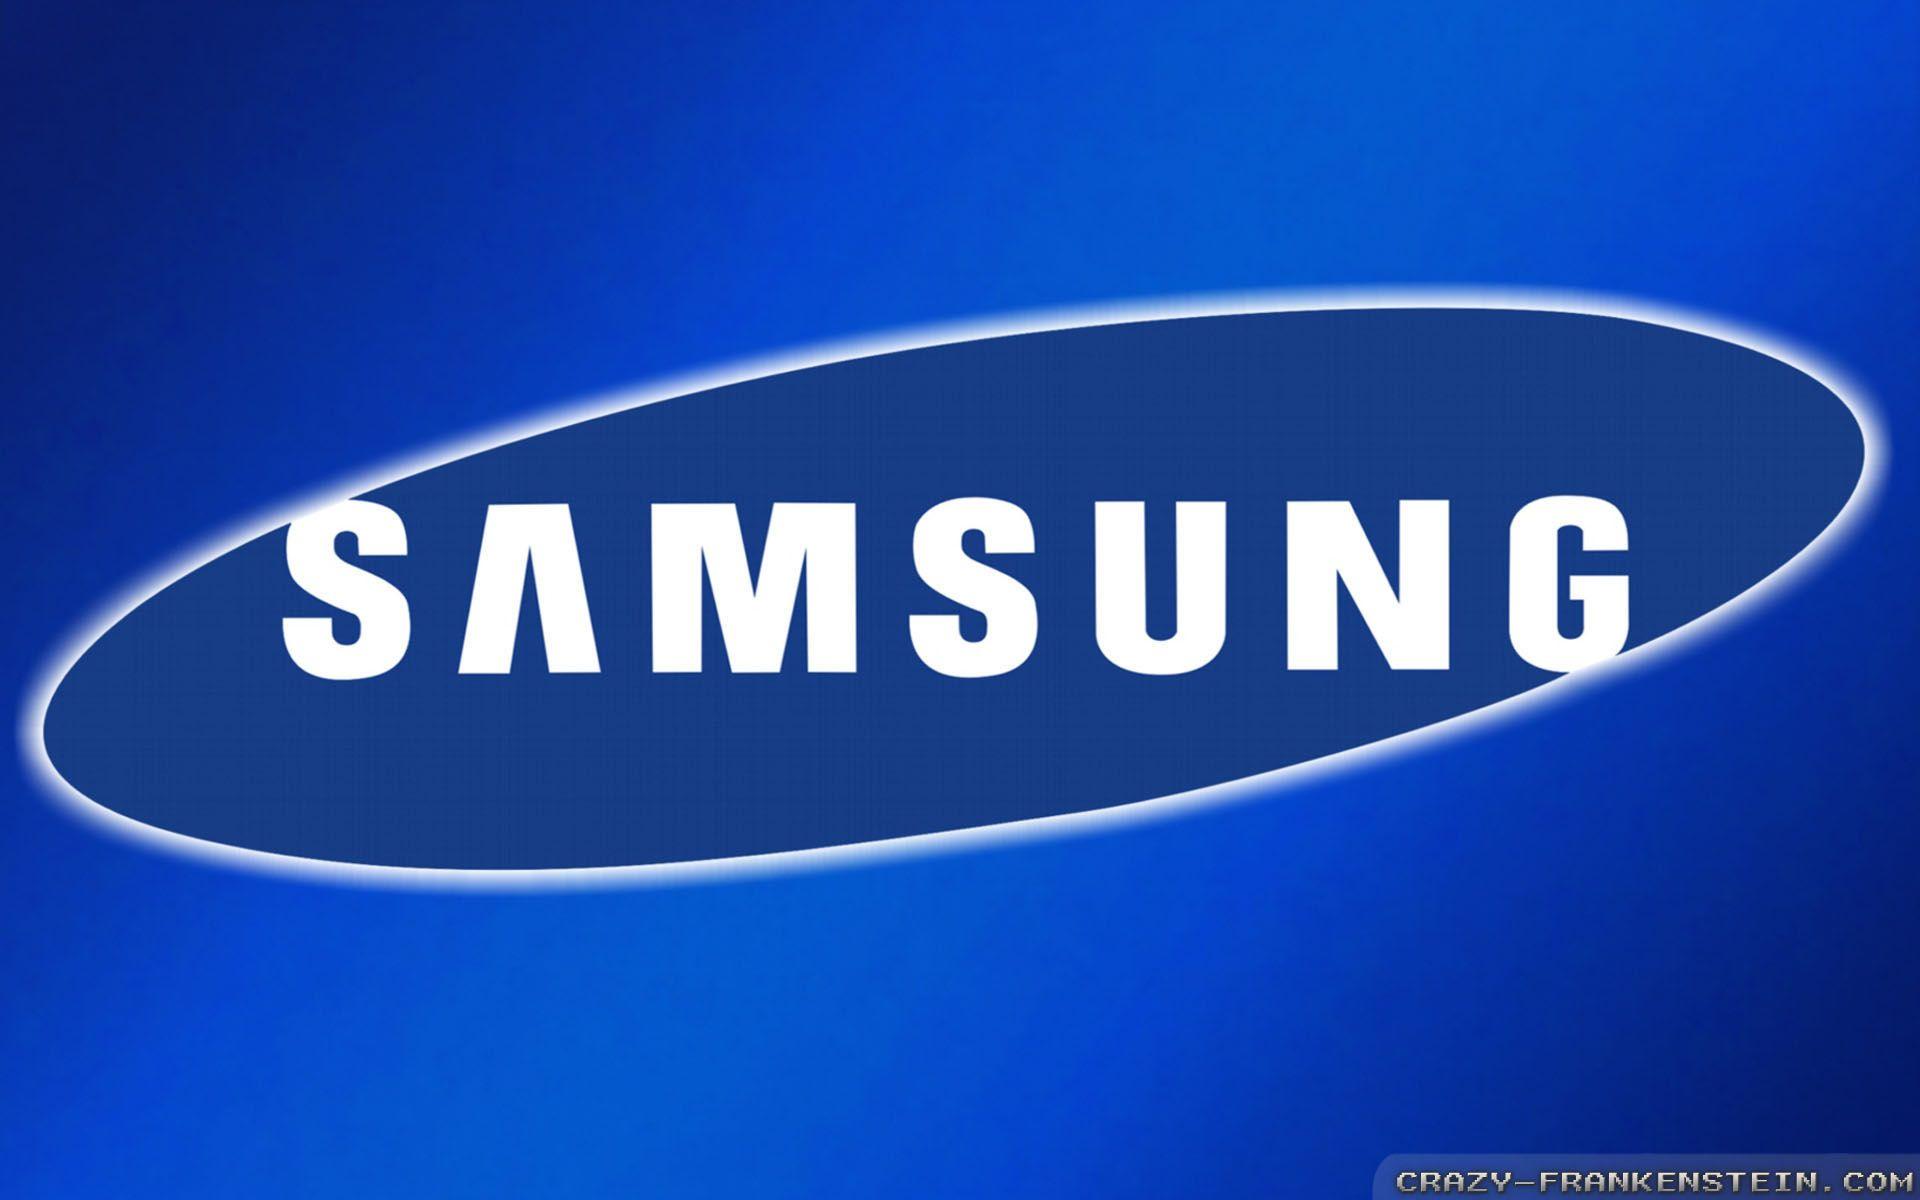 Tải miễn phí hình nền Samsung Logo [1920x1200] cho máy tính của bạn Nếu bạn là fan của thương hiệu Samsung, hãy tải ngay hình nền Samsung Logo [1920x1200] miễn phí cho máy tính của bạn! Với chất lượng hình ảnh sắc nét, bạn sẽ được trải nghiệm sự vẻ đẹp của thương hiệu Samsung ngay trên màn hình máy tính của mình.